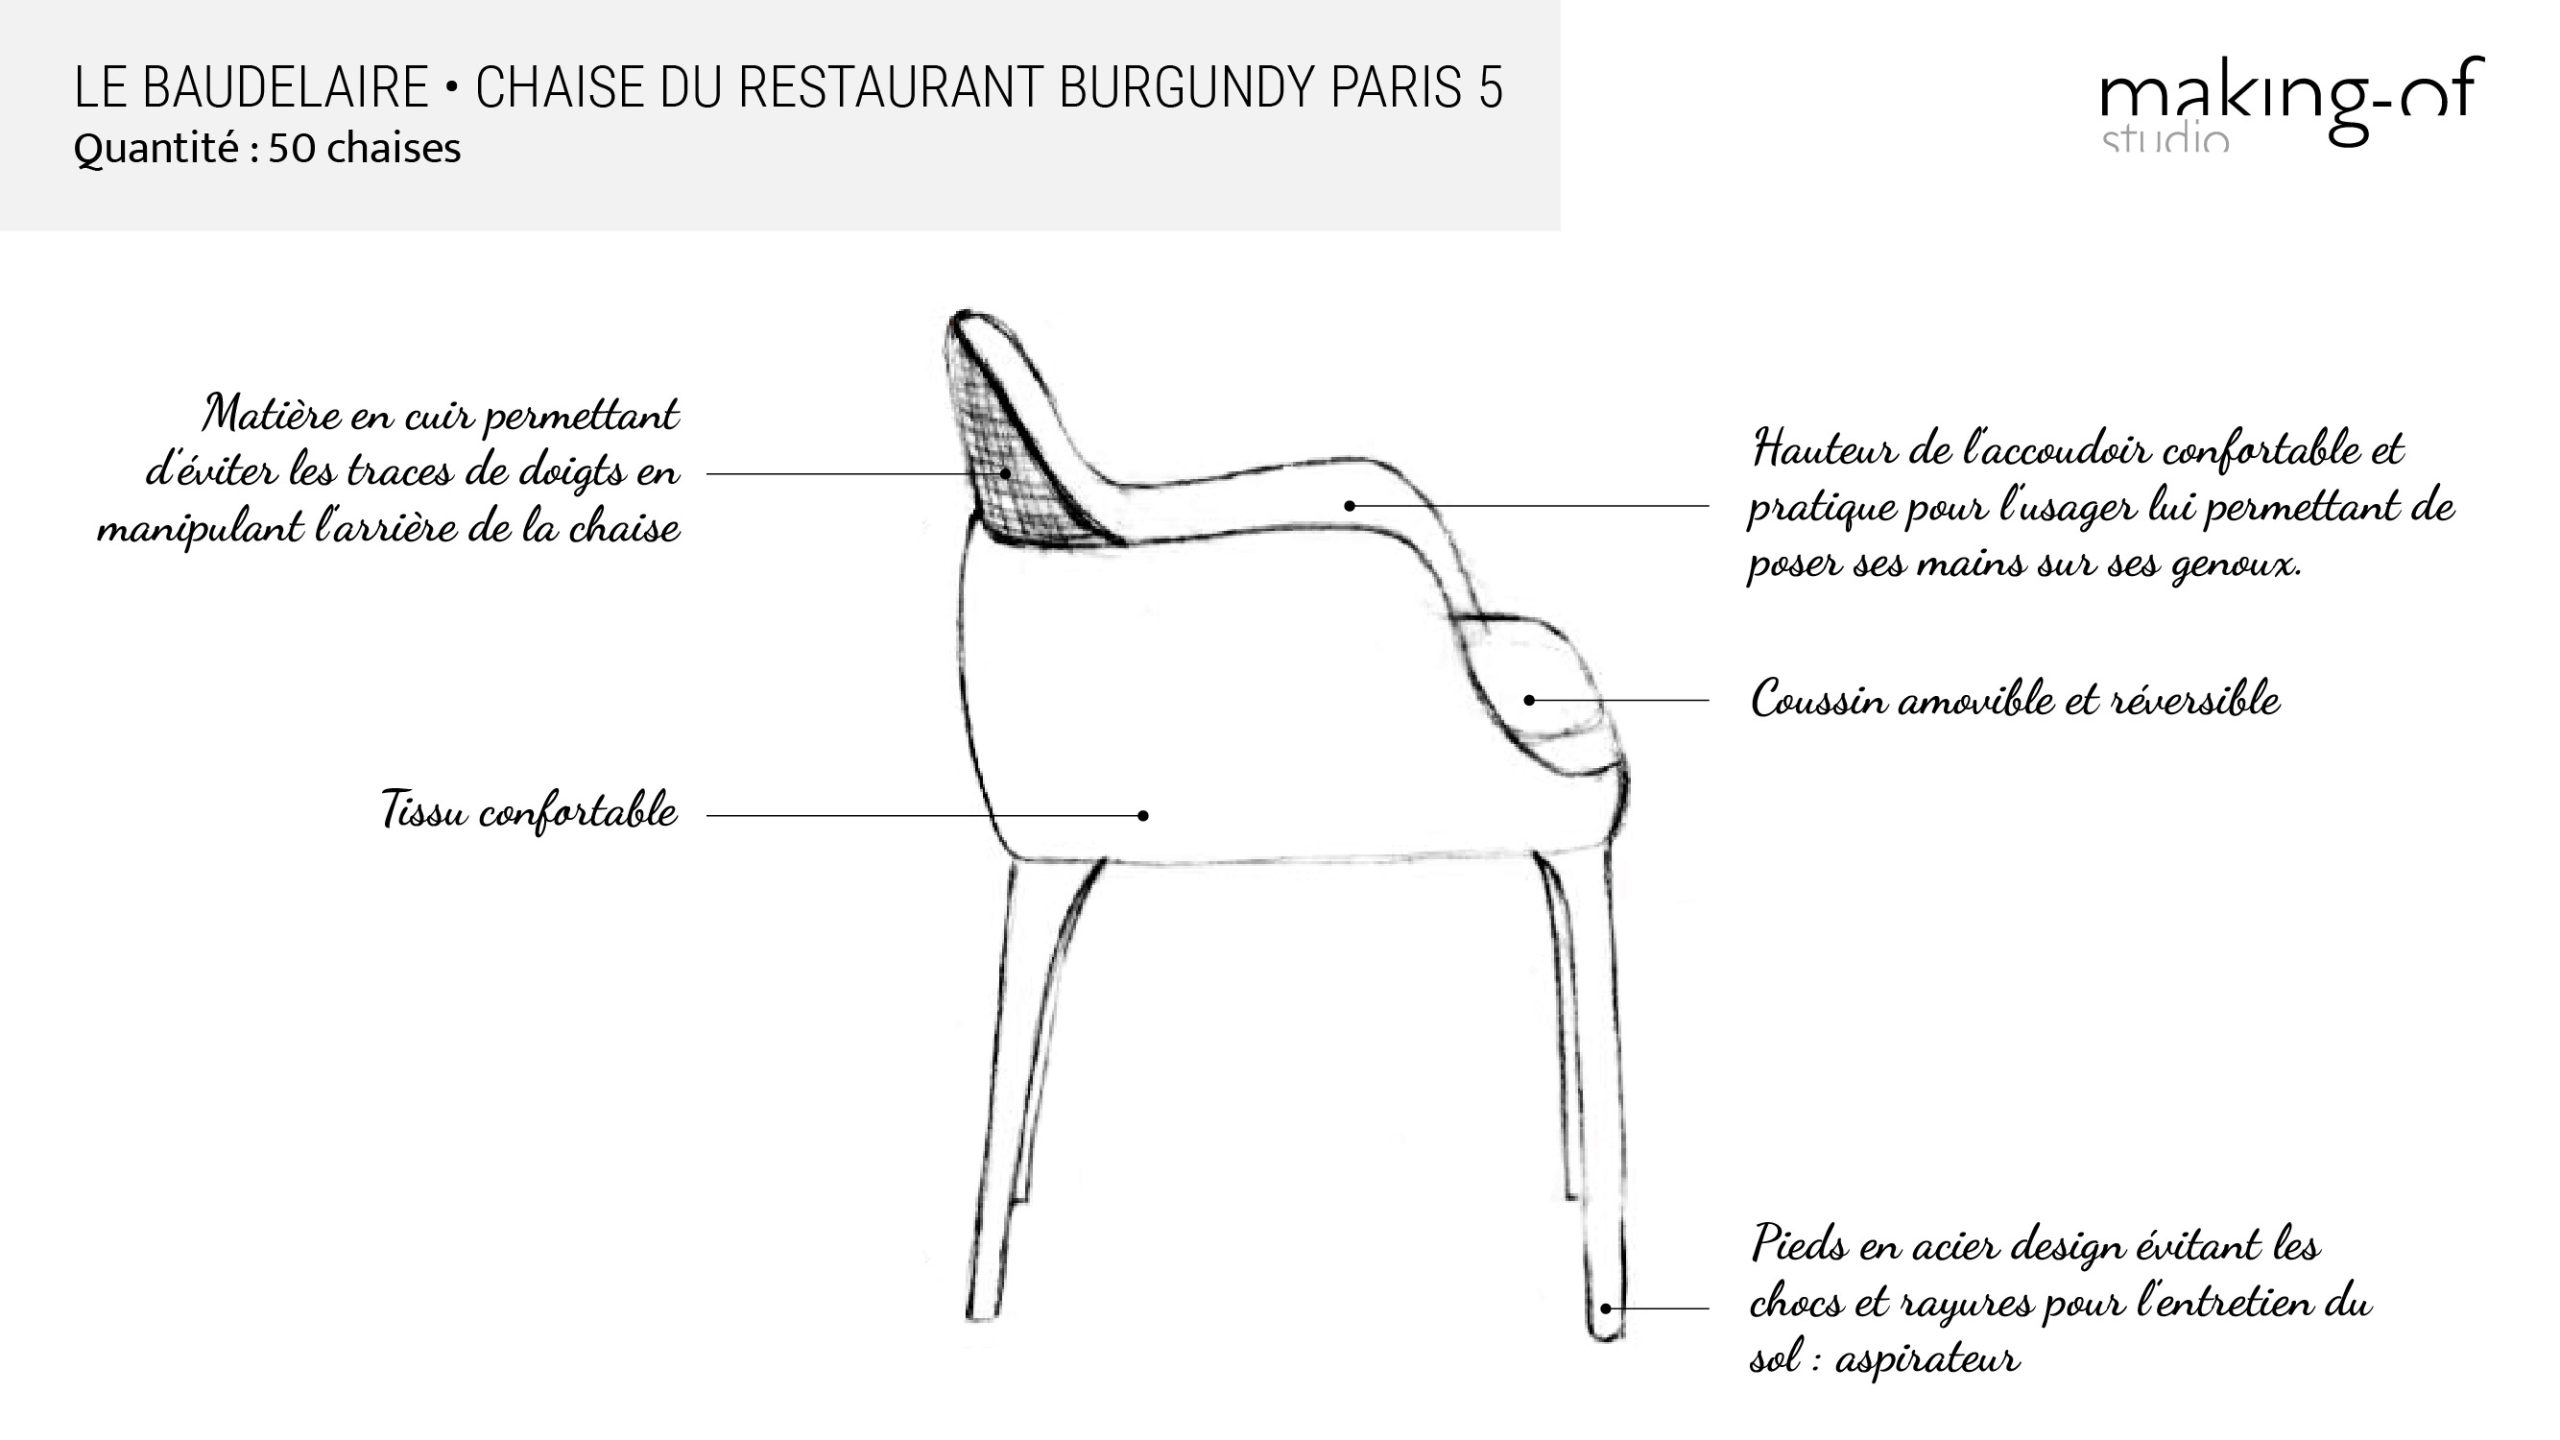 Dessin croquis d’une chaise du Burgundy Paris